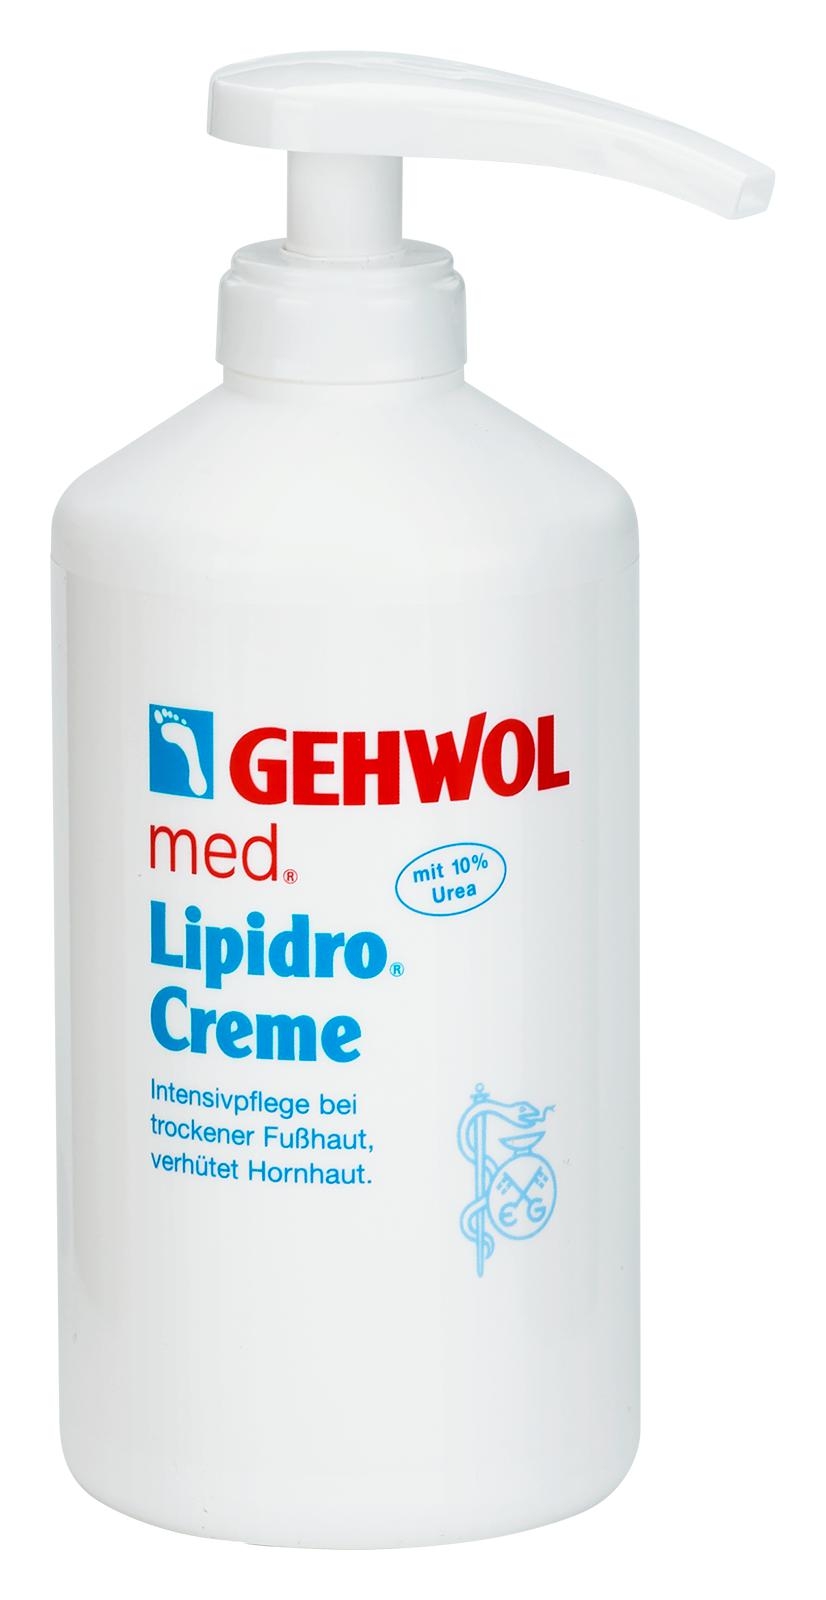 GEHWOL med Lipidro-Creme 500 ml Dose mit Spender